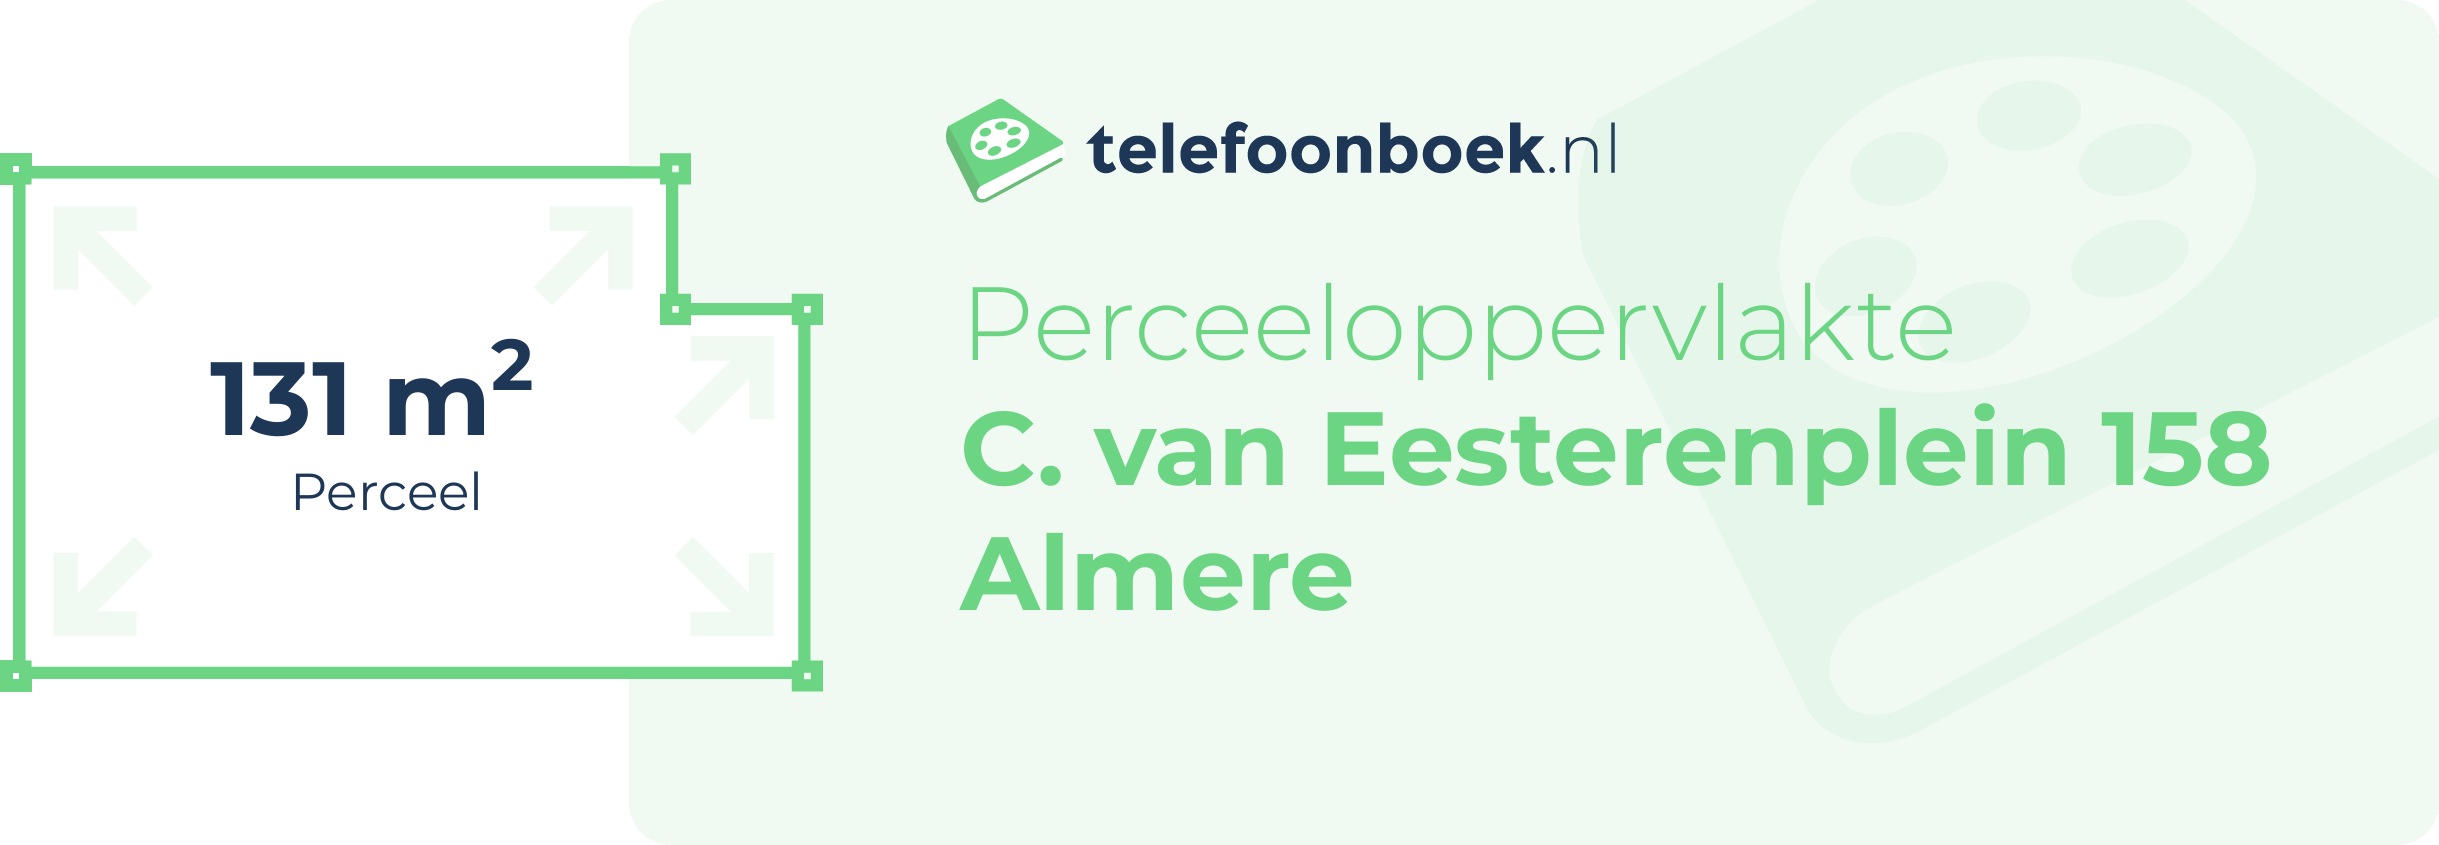 Perceeloppervlakte C. Van Eesterenplein 158 Almere